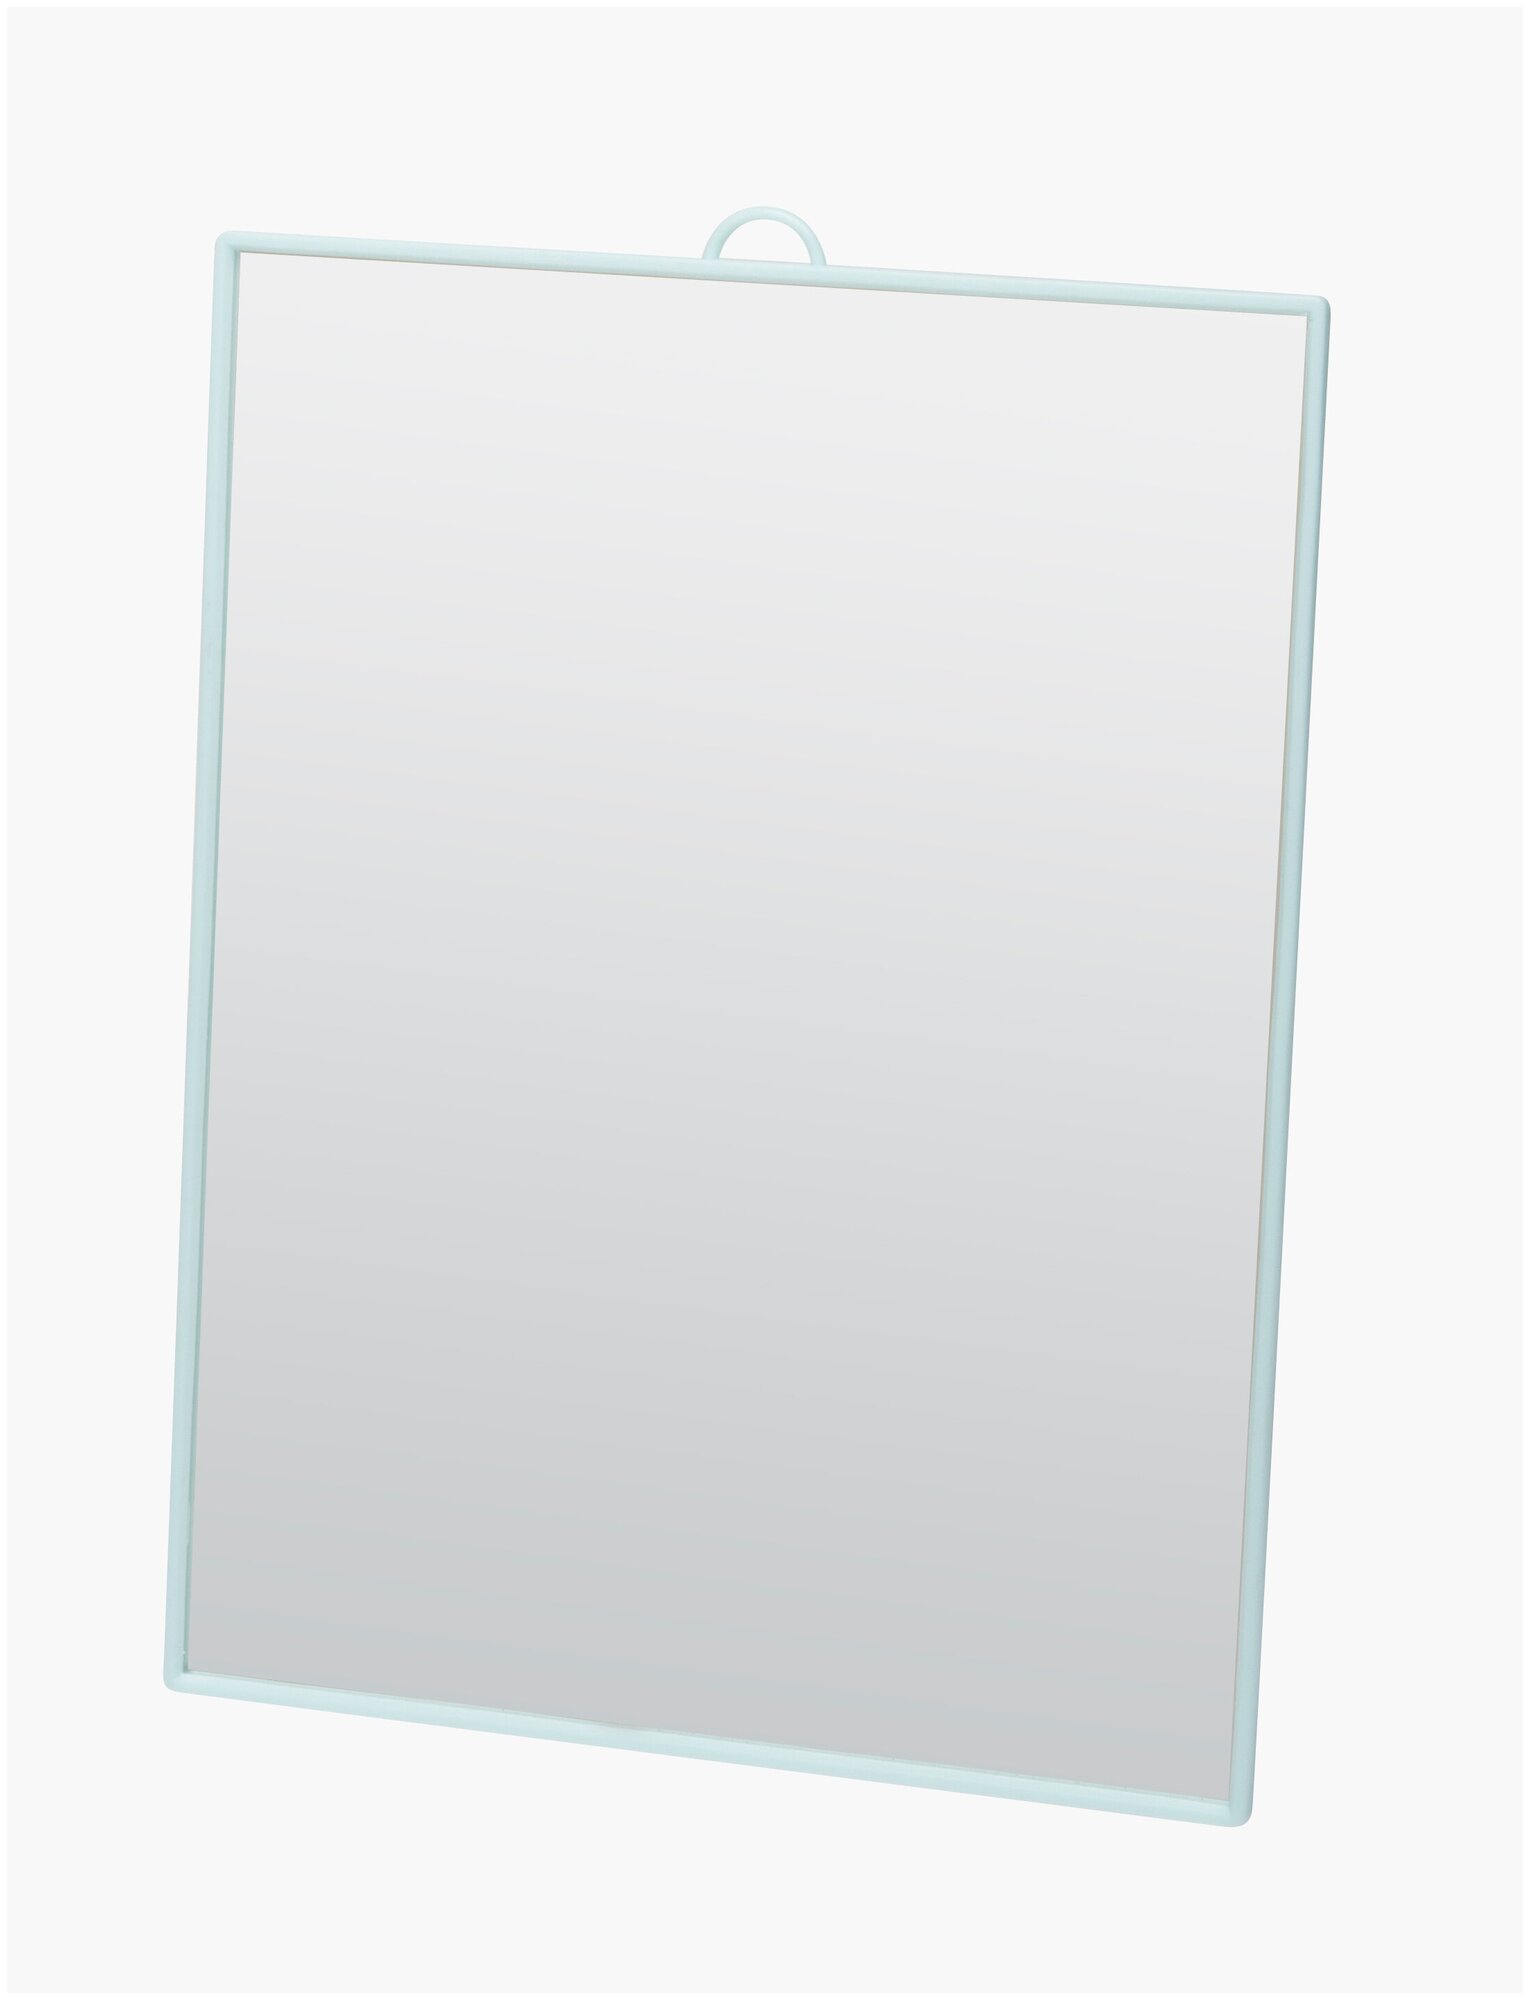 Зеркало настольное, в бирюзовой оправе, на пластиковой подставке 17,5x24 см